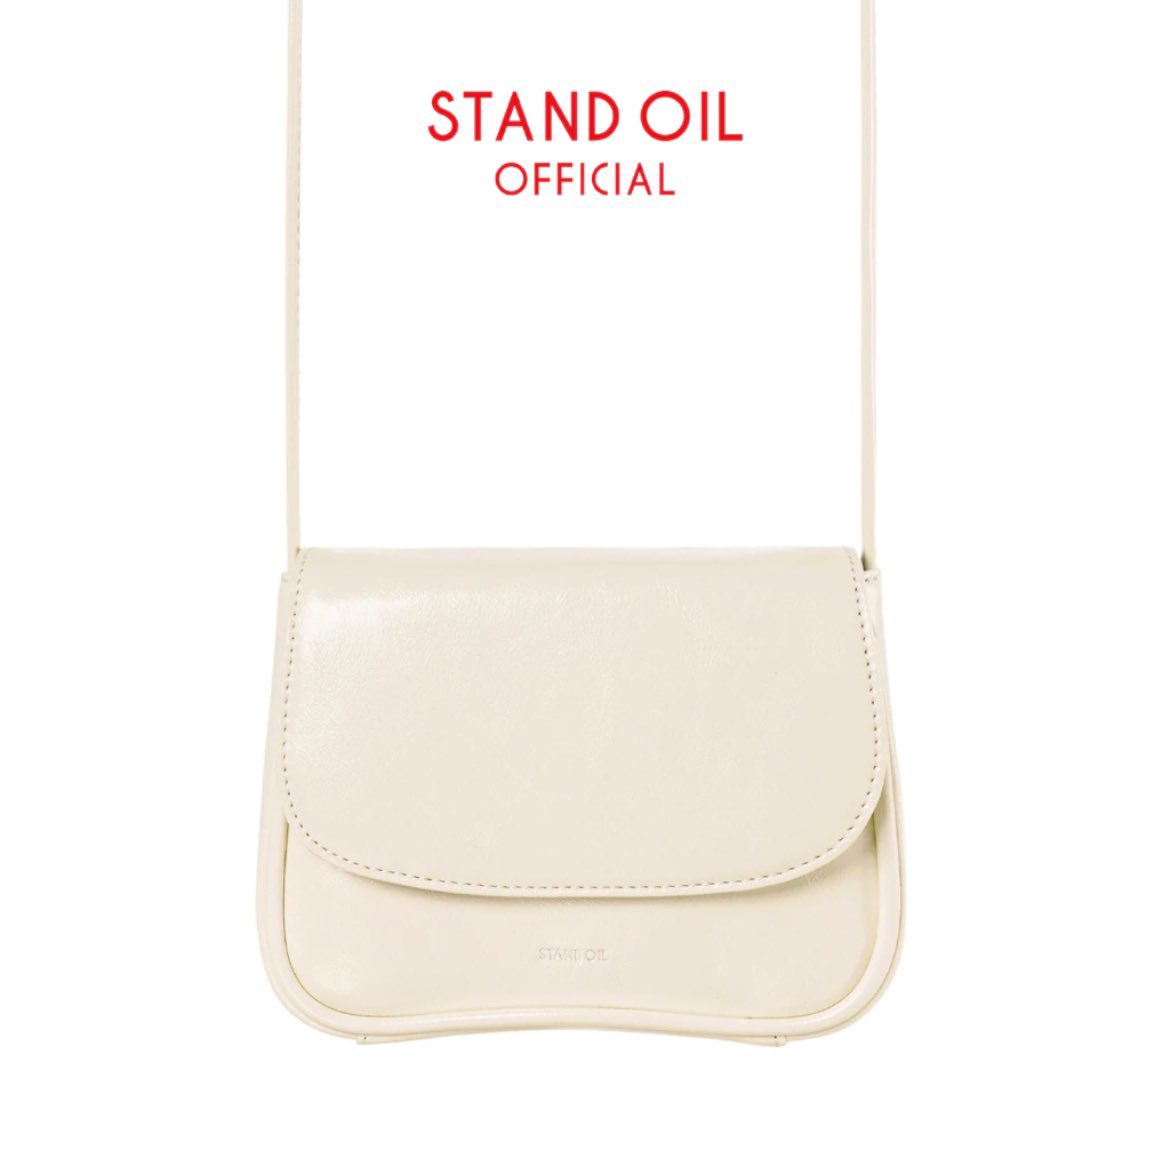 ส่งต่อกระเป๋า #standoil รุ่น cookie bag 🍪 ราคา 1100 ส่งฟรี (shop2,100) อุปกรณ์ครบ สภาพดีมากค่ะ ใช้งานไปแค่2-3ครั้ง dmขอดูเพิ่มเติมได้เลย #ส่งต่อกระเป๋า #กระเป๋ามือสองสภาพดี #standoil #ส่งต่อstandoil